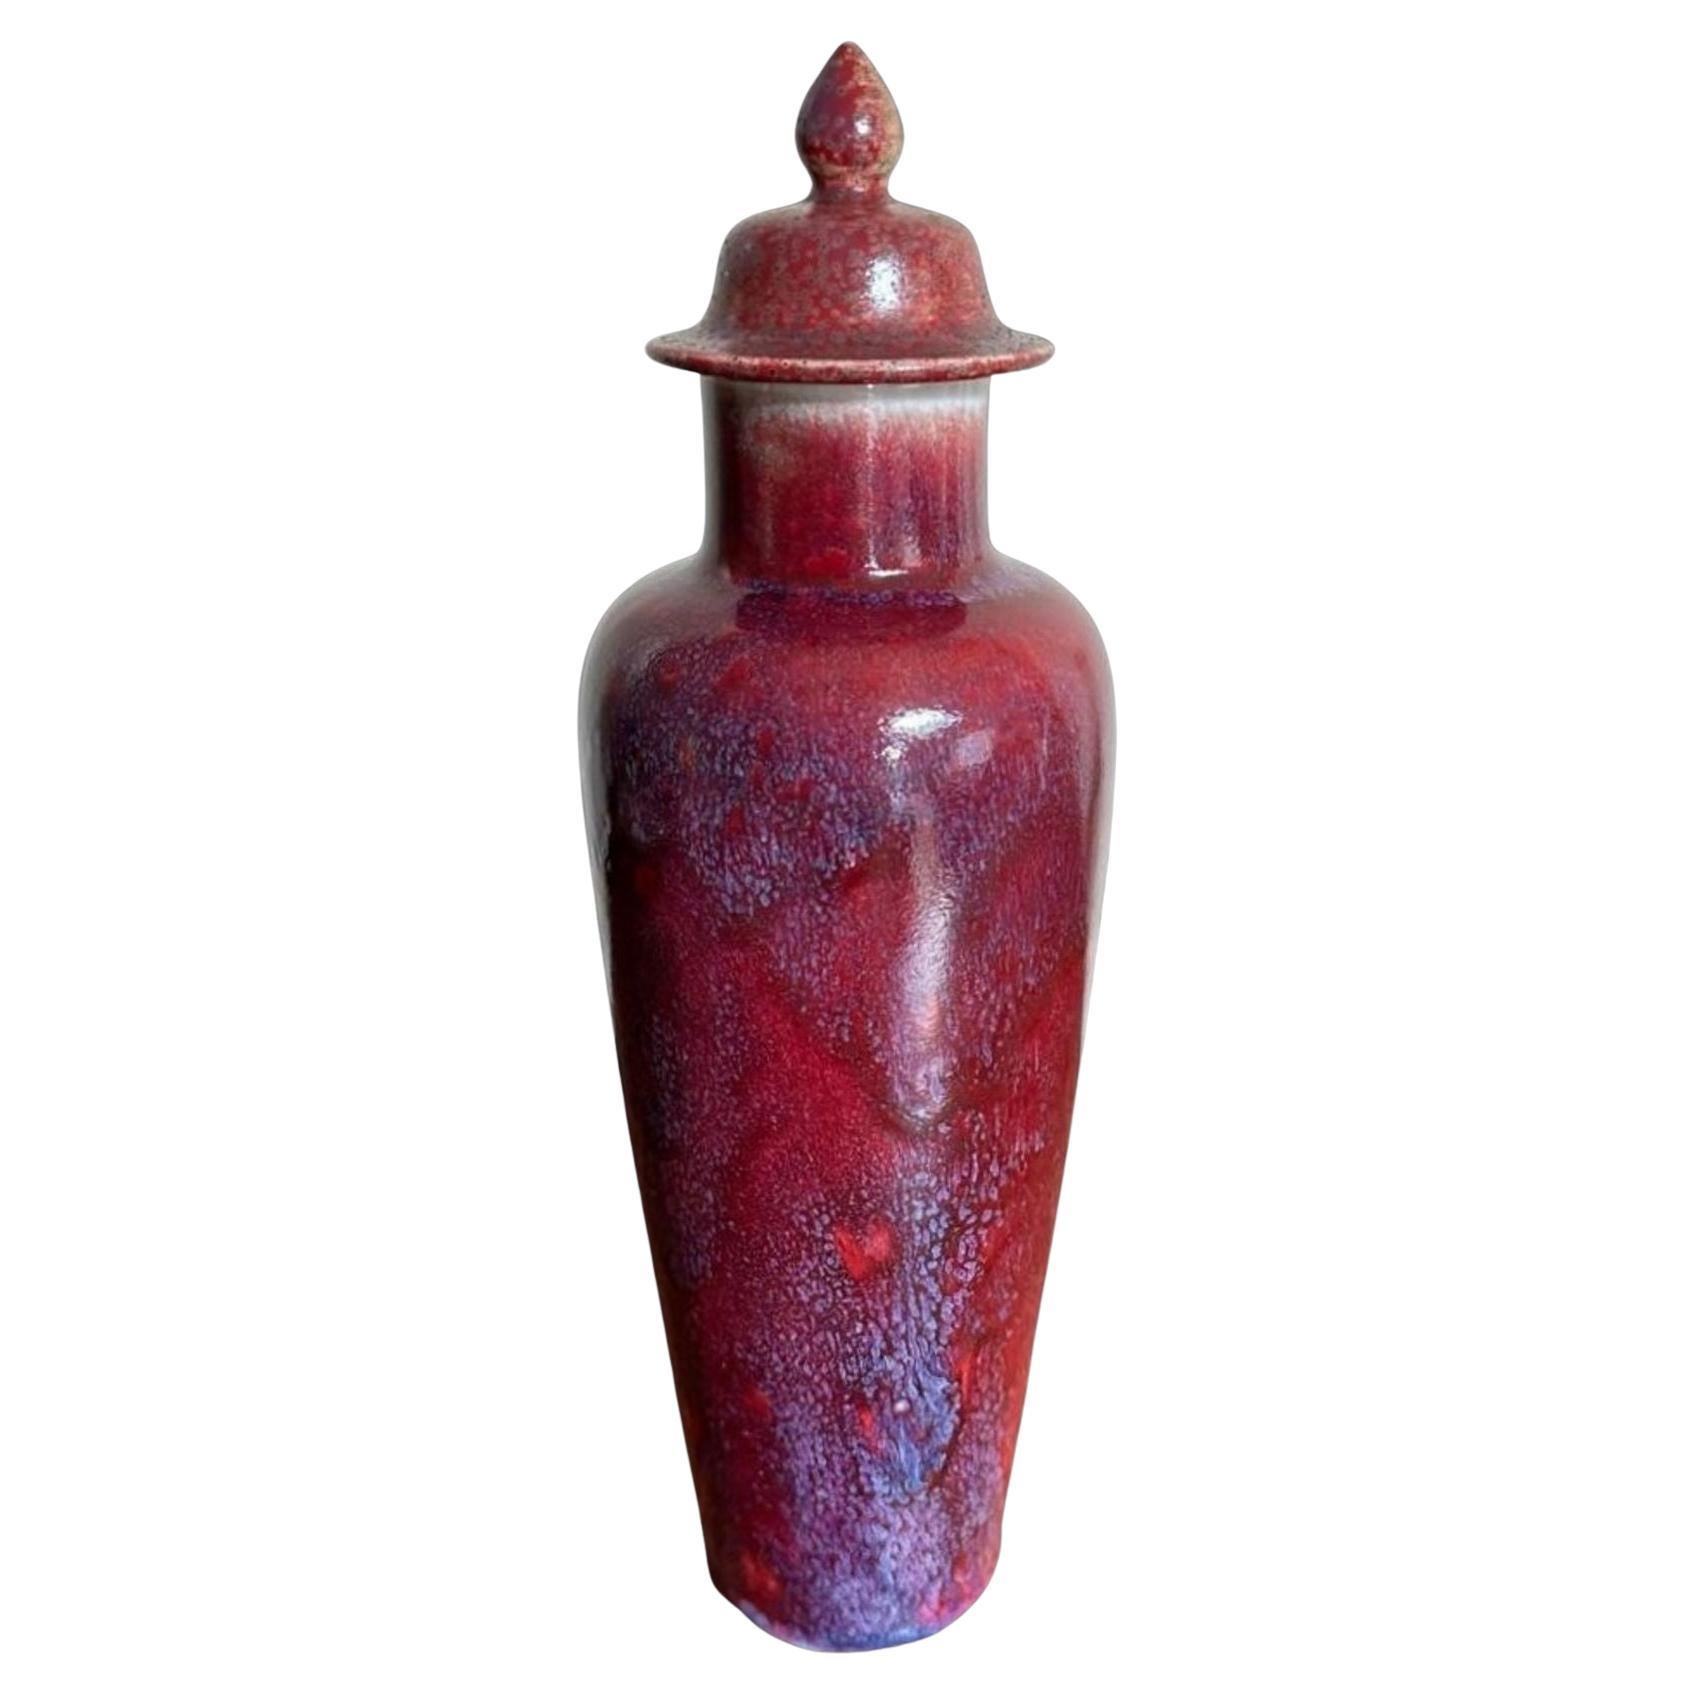 Ruskin High-Fired Lidded Vase